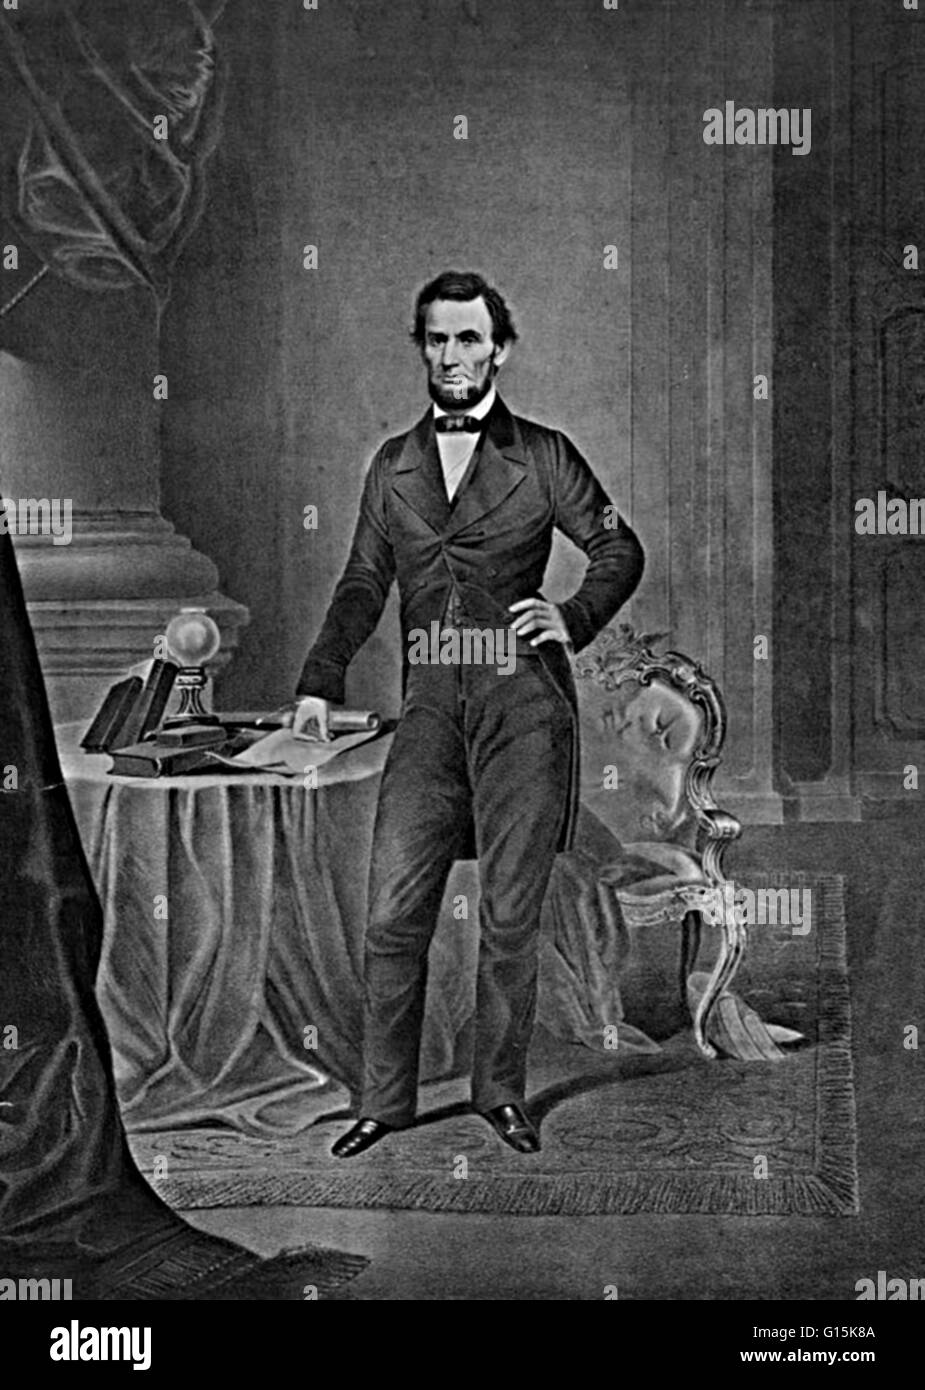 Abraham Lincoln (12. Februar 1809 - 15. April 1865) war der 16. Präsident der Vereinigten Staaten, von März 1861 bis zu seiner Ermordung im Jahre 1865. Er führte sein Land durch die American Civil War, Erhaltung der Union während der Sklaverei und die Förderung Stockfoto